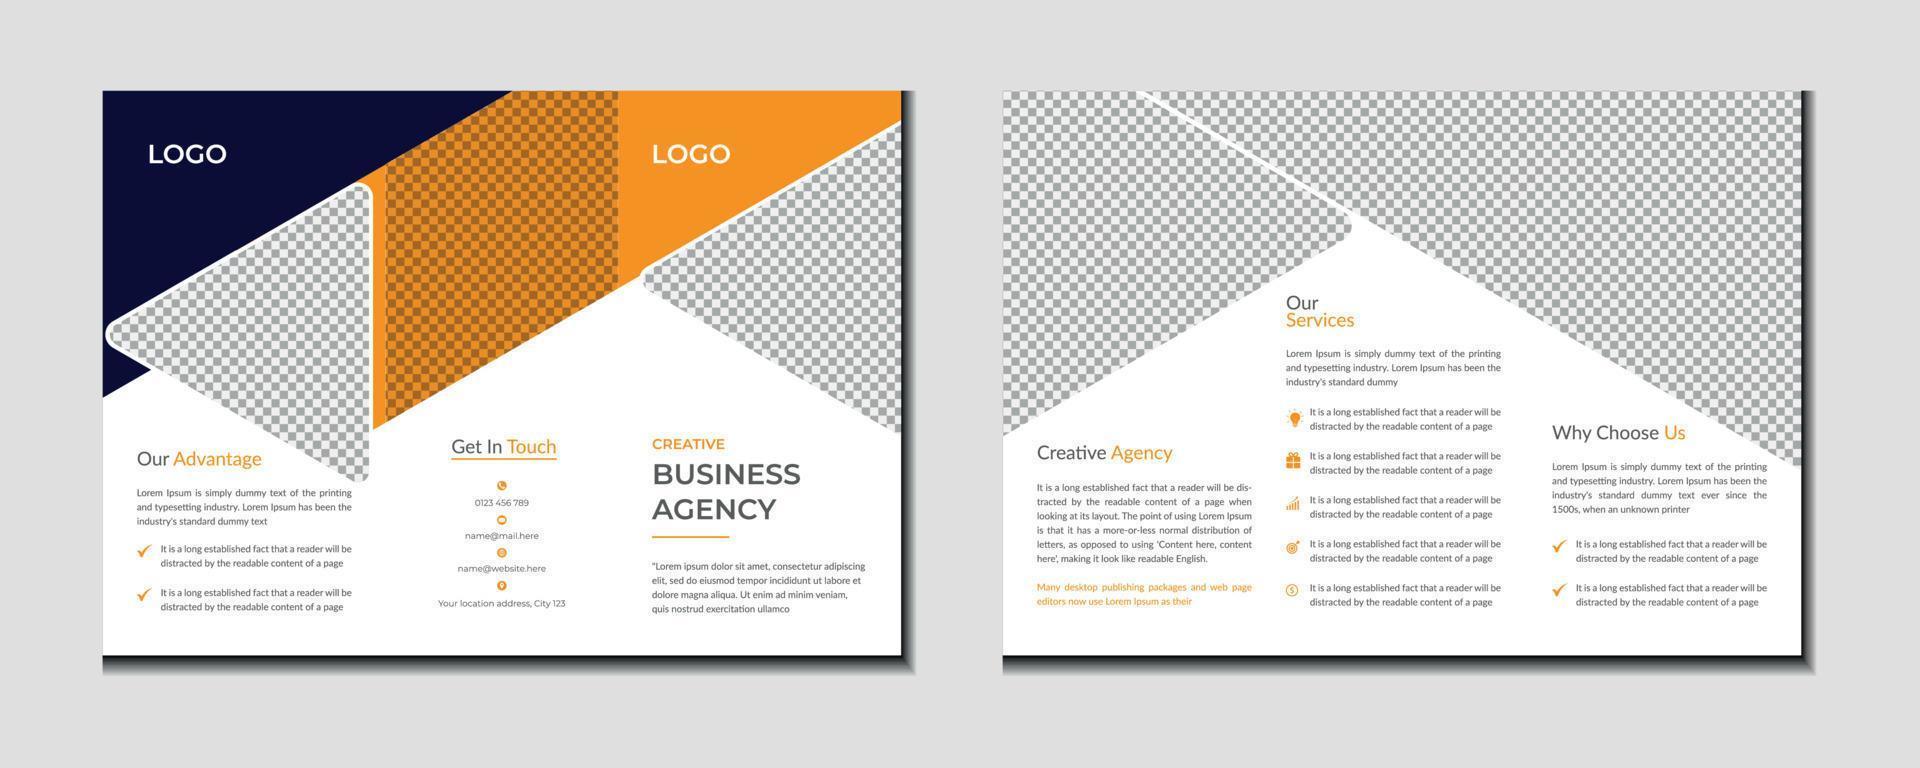 företag eller företags- trifold broschyr mall design vektor